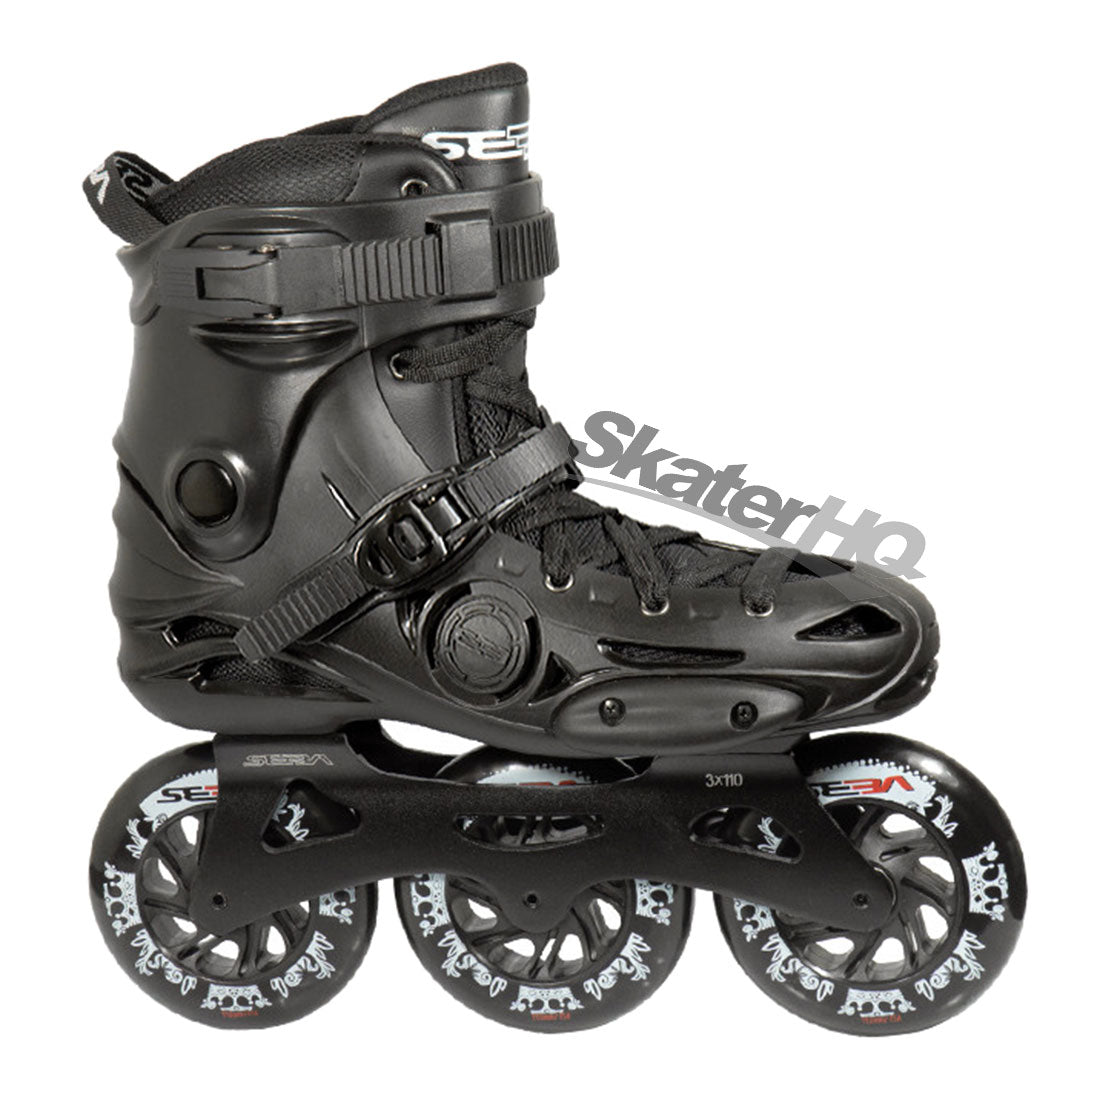 Seba E3 310 Premium Black - 12US EU46 Inline Rec Skates